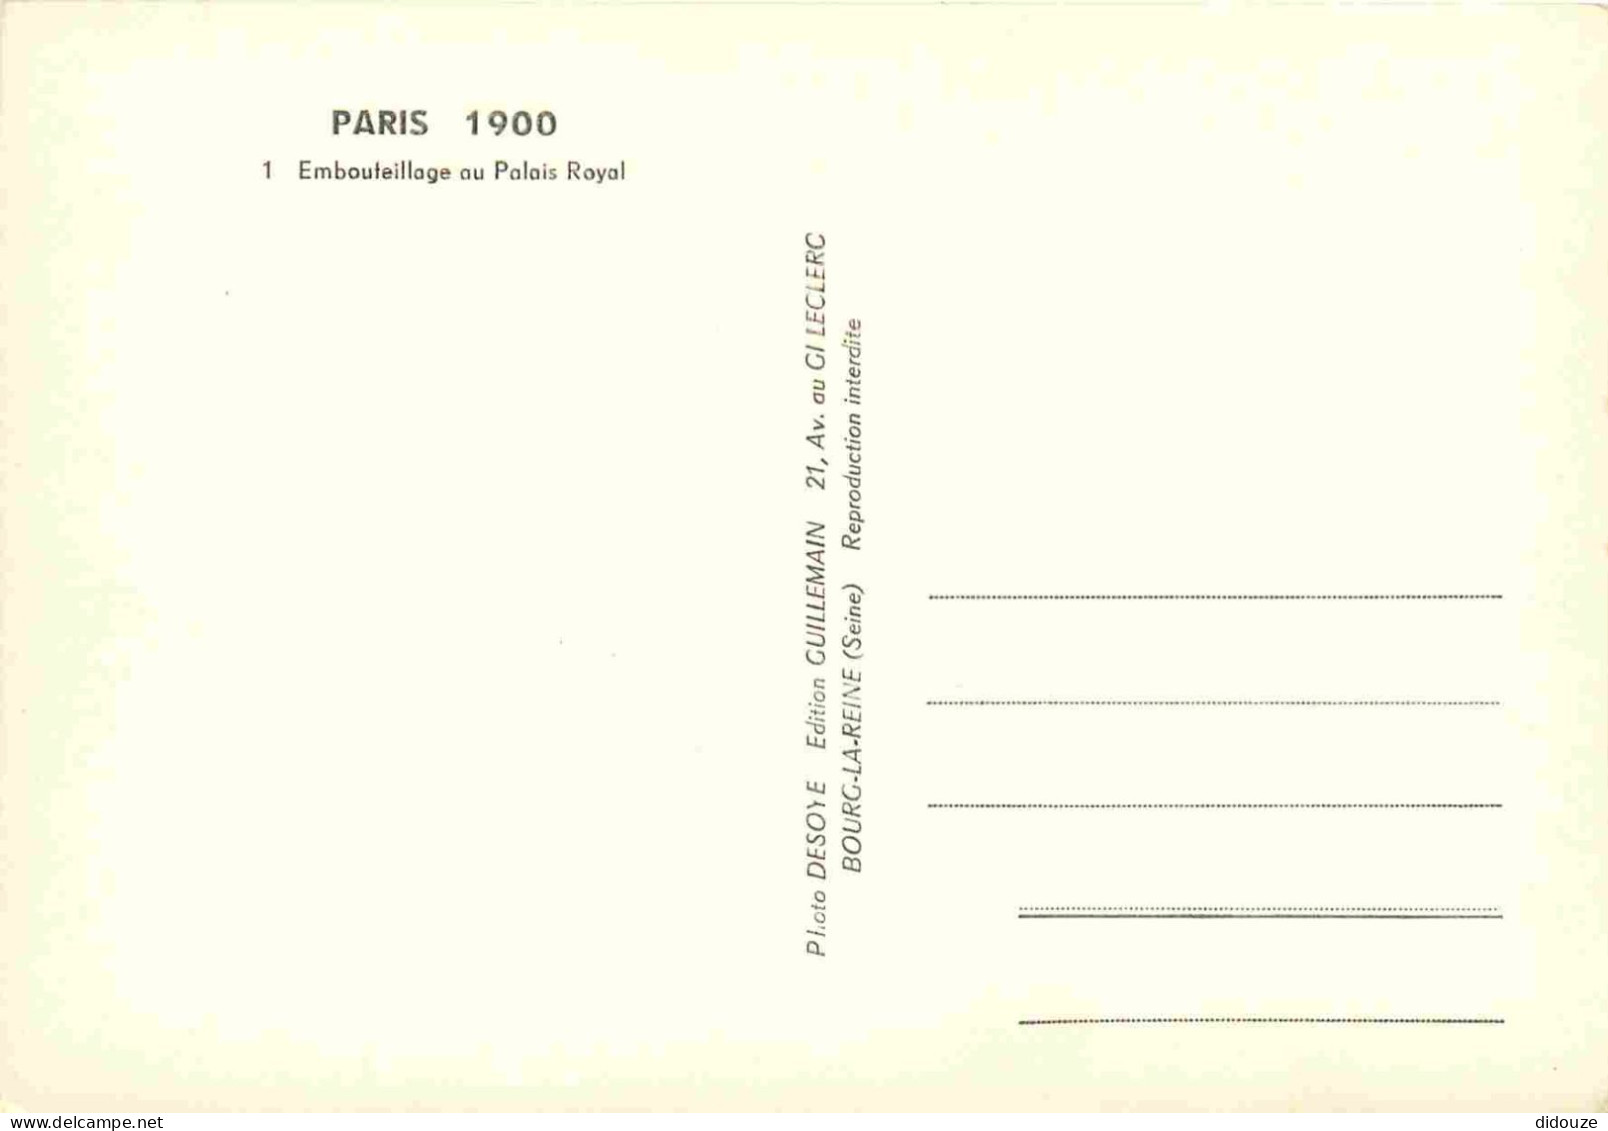 Reproduction CPA - 75 Paris - Embouteillage Au Palais Royal - Automobiles - Omnibus - Paris 1900 - 1 - CPM - Carte Neuve - Ohne Zuordnung